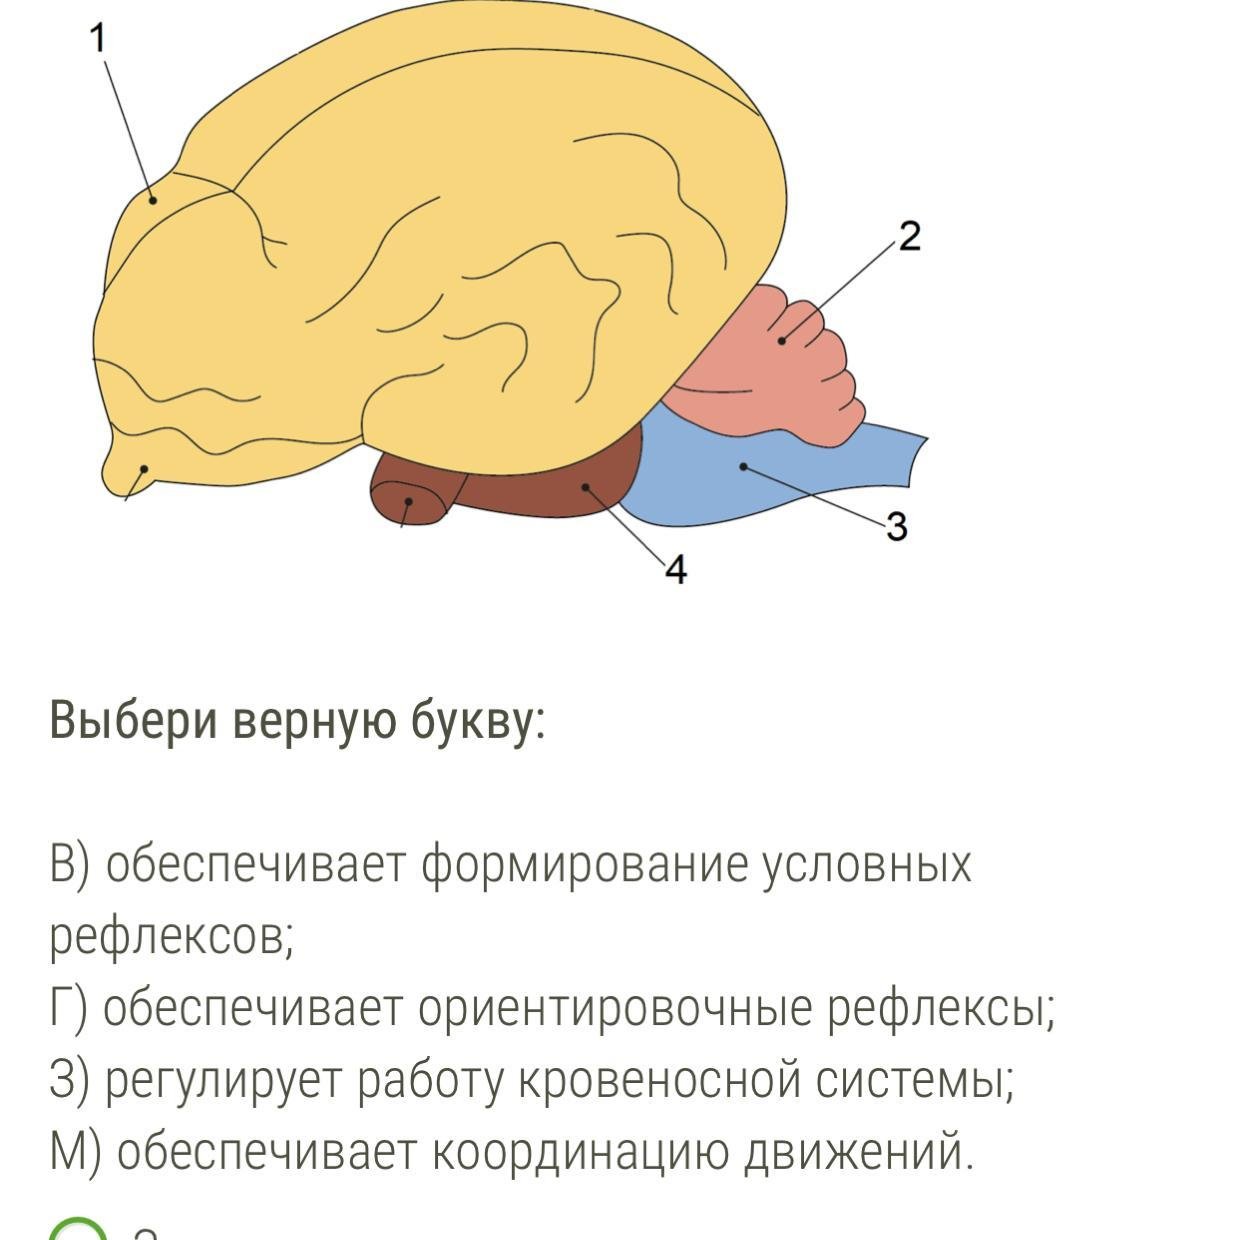 Отделы входящие в состав головного мозга млекопитающих. Мозг млекопитающих. Отделы головного мозга млекопитающих. Строение головного мозга млекопитающих. Функции мозга млекопитающих.